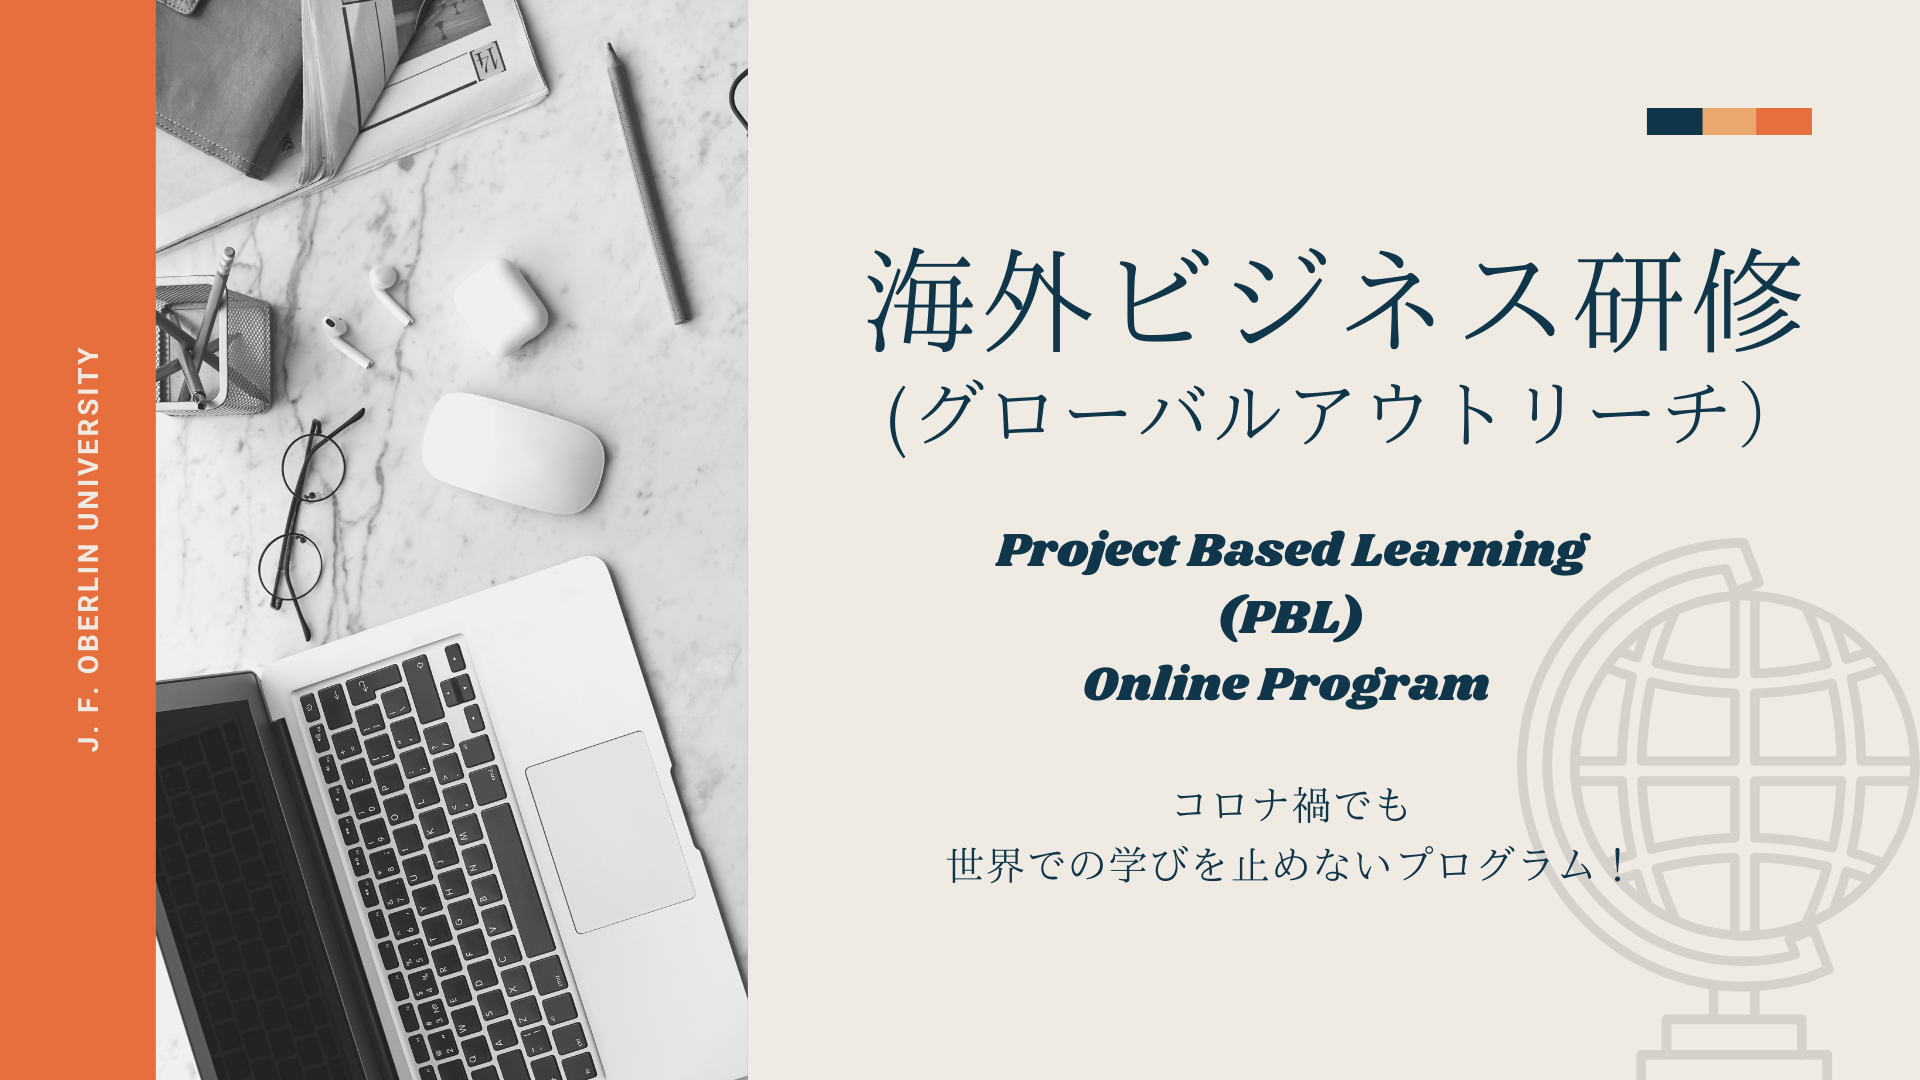 【説明会開催】海外ビジネス研修 (グローバルアウトリーチ) Project Based Learning Online Program